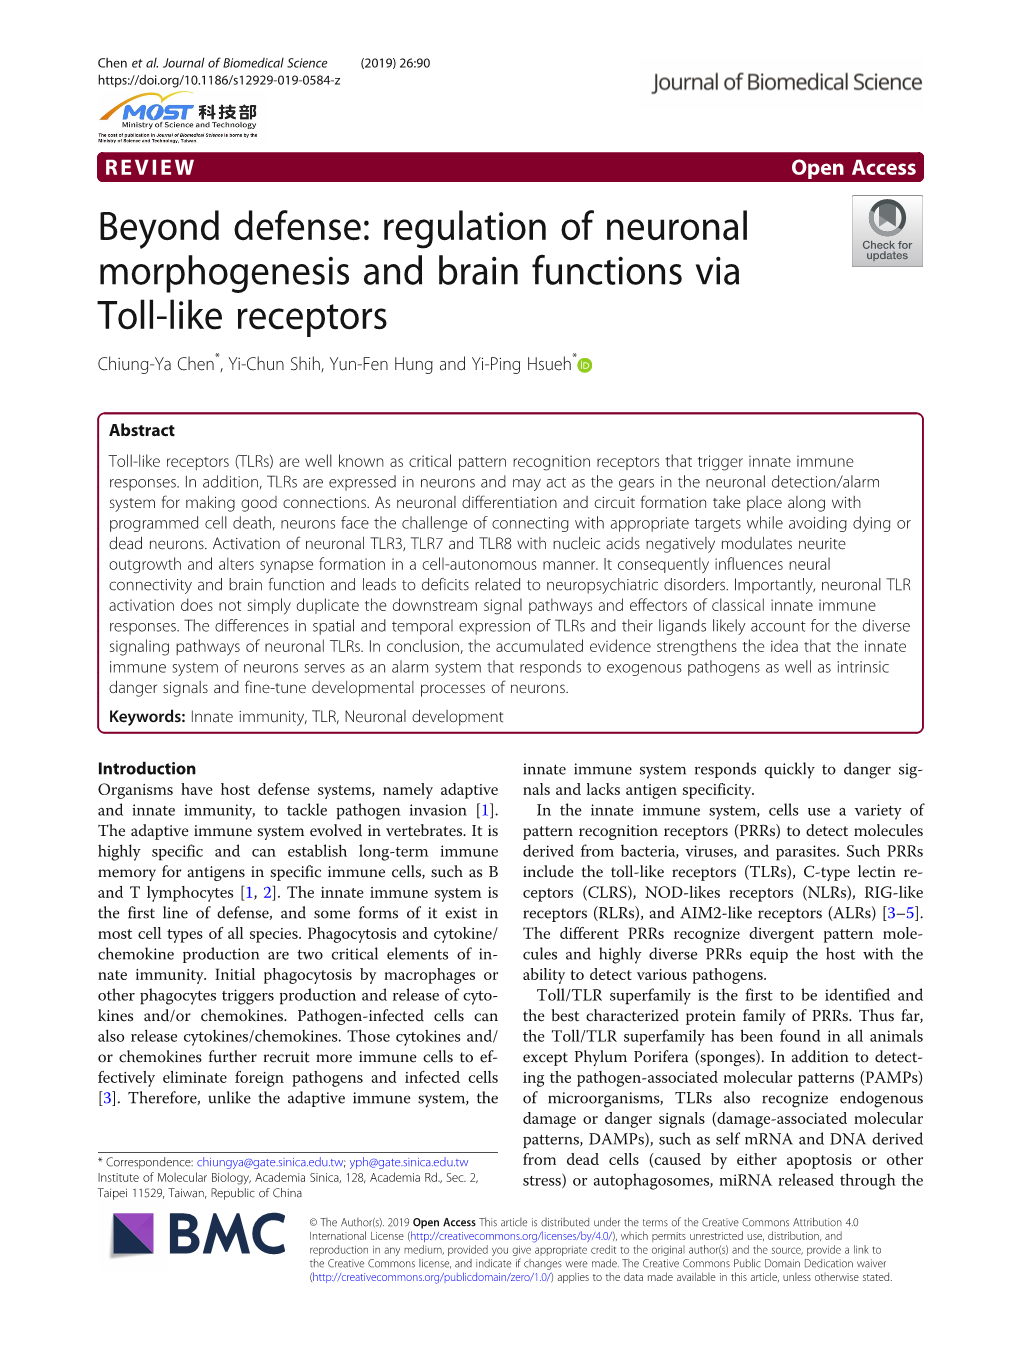 Regulation of Neuronal Morphogenesis and Brain Functions Via Toll-Like Receptors Chiung-Ya Chen*, Yi-Chun Shih, Yun-Fen Hung and Yi-Ping Hsueh*